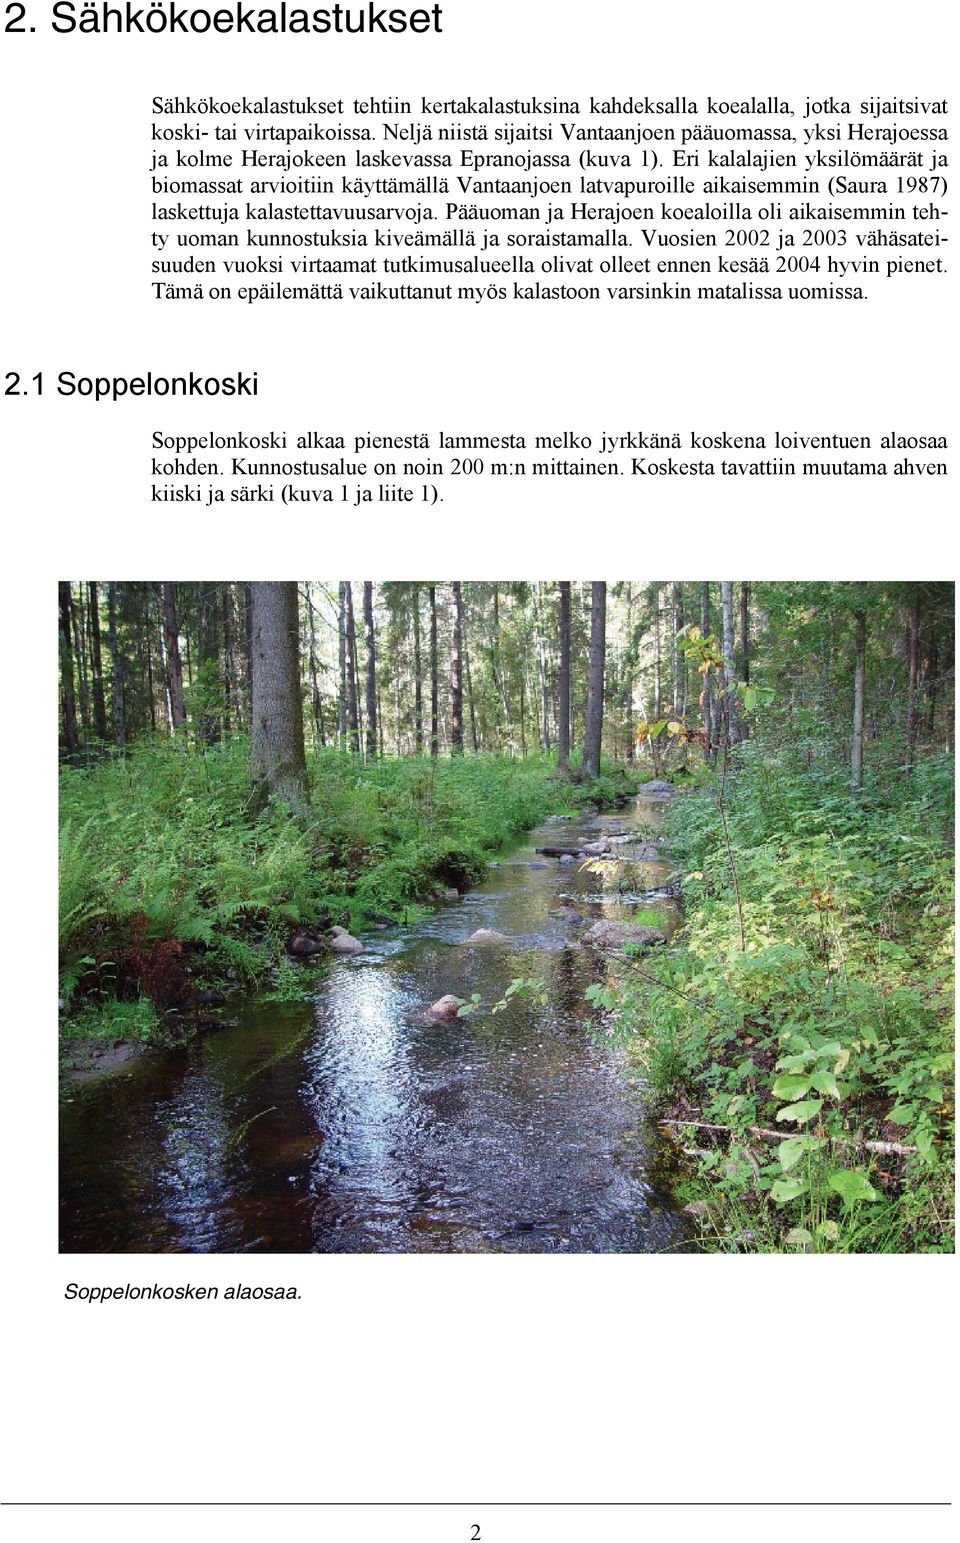 Eri kalalajien yksilömäärät ja biomassat arvioitiin käyttämällä Vantaanjoen latvapuroille aikaisemmin (Saura 1987) laskettuja kalastettavuusarvoja.